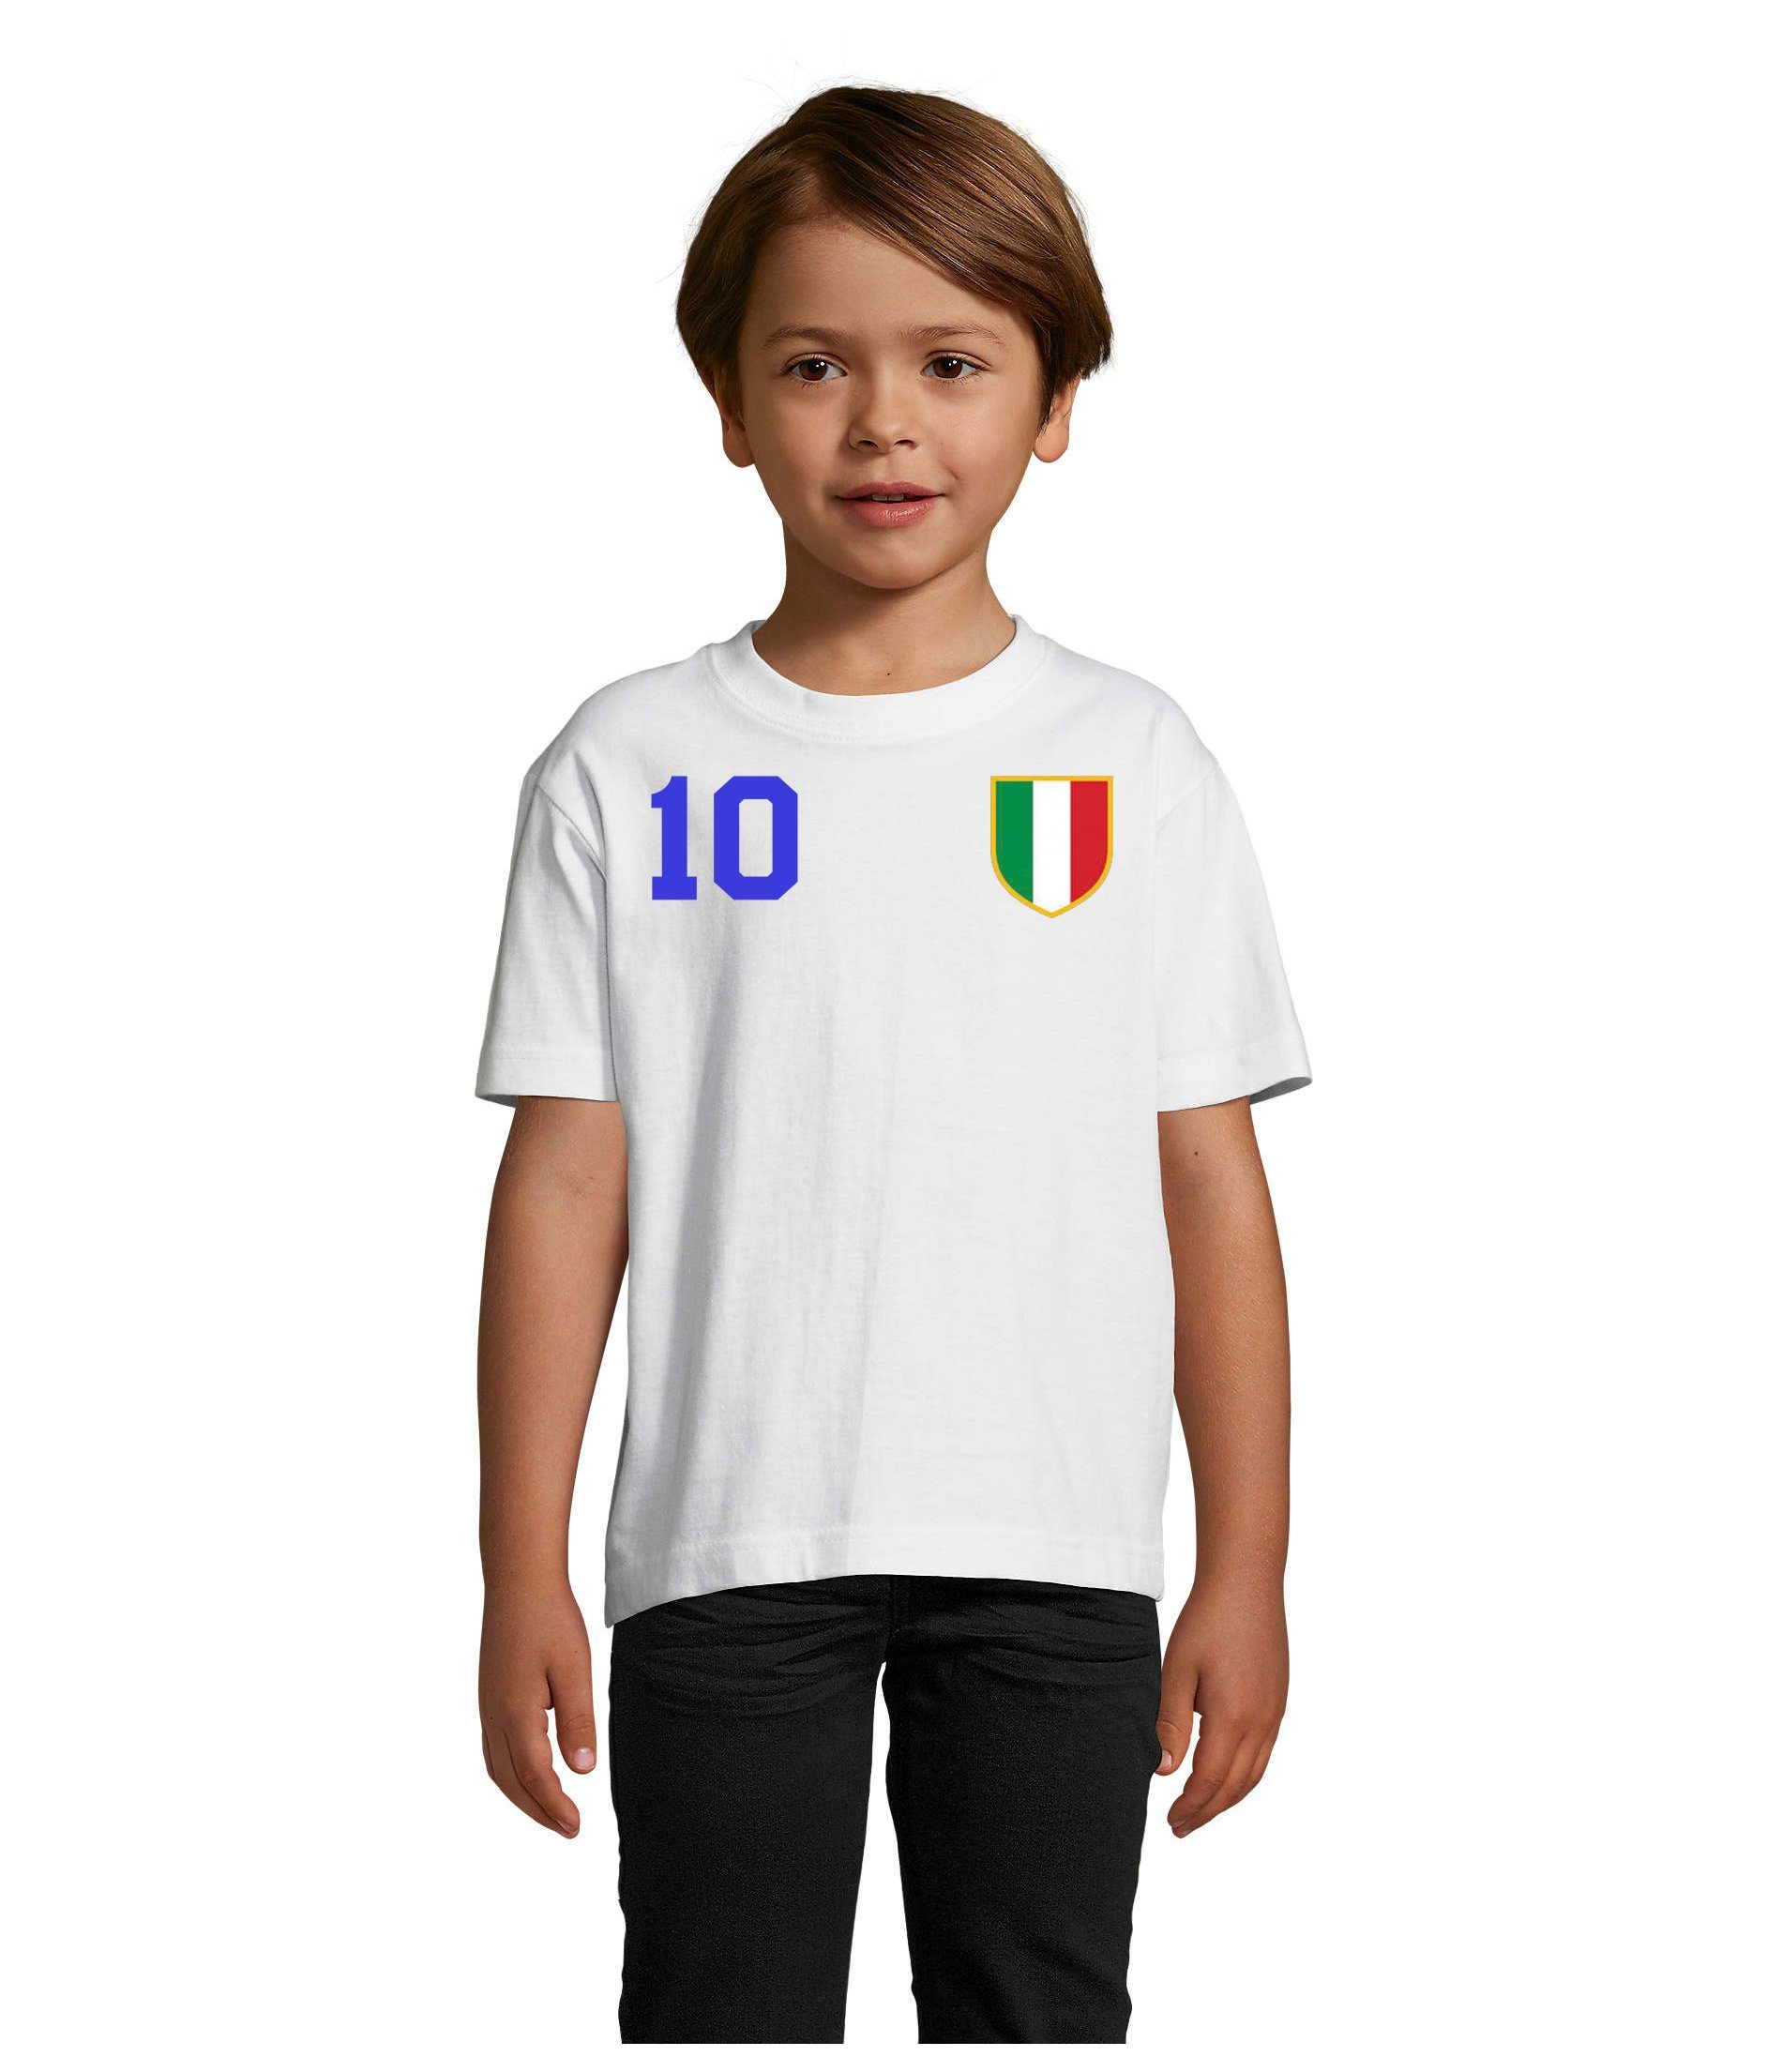 Blondie & Brownie T-Shirt Kinder Italien Sport Trikot Fußball Meister WM Europa EM Blau/Weiss